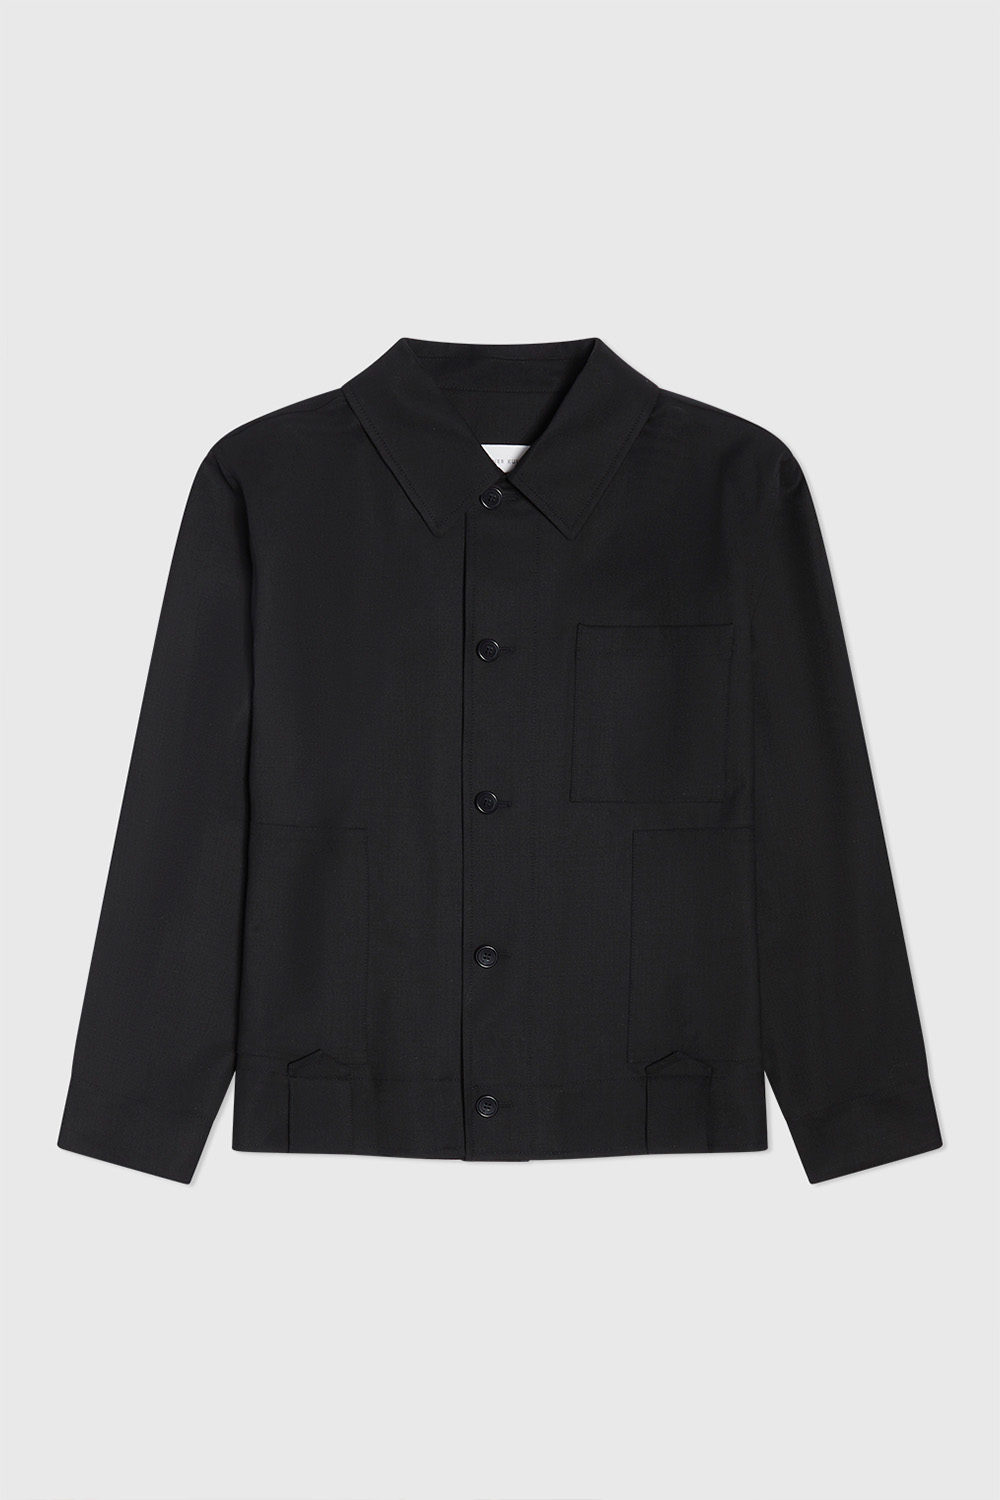 Berner Kühl Black Uniform Jacket Berner Kühl